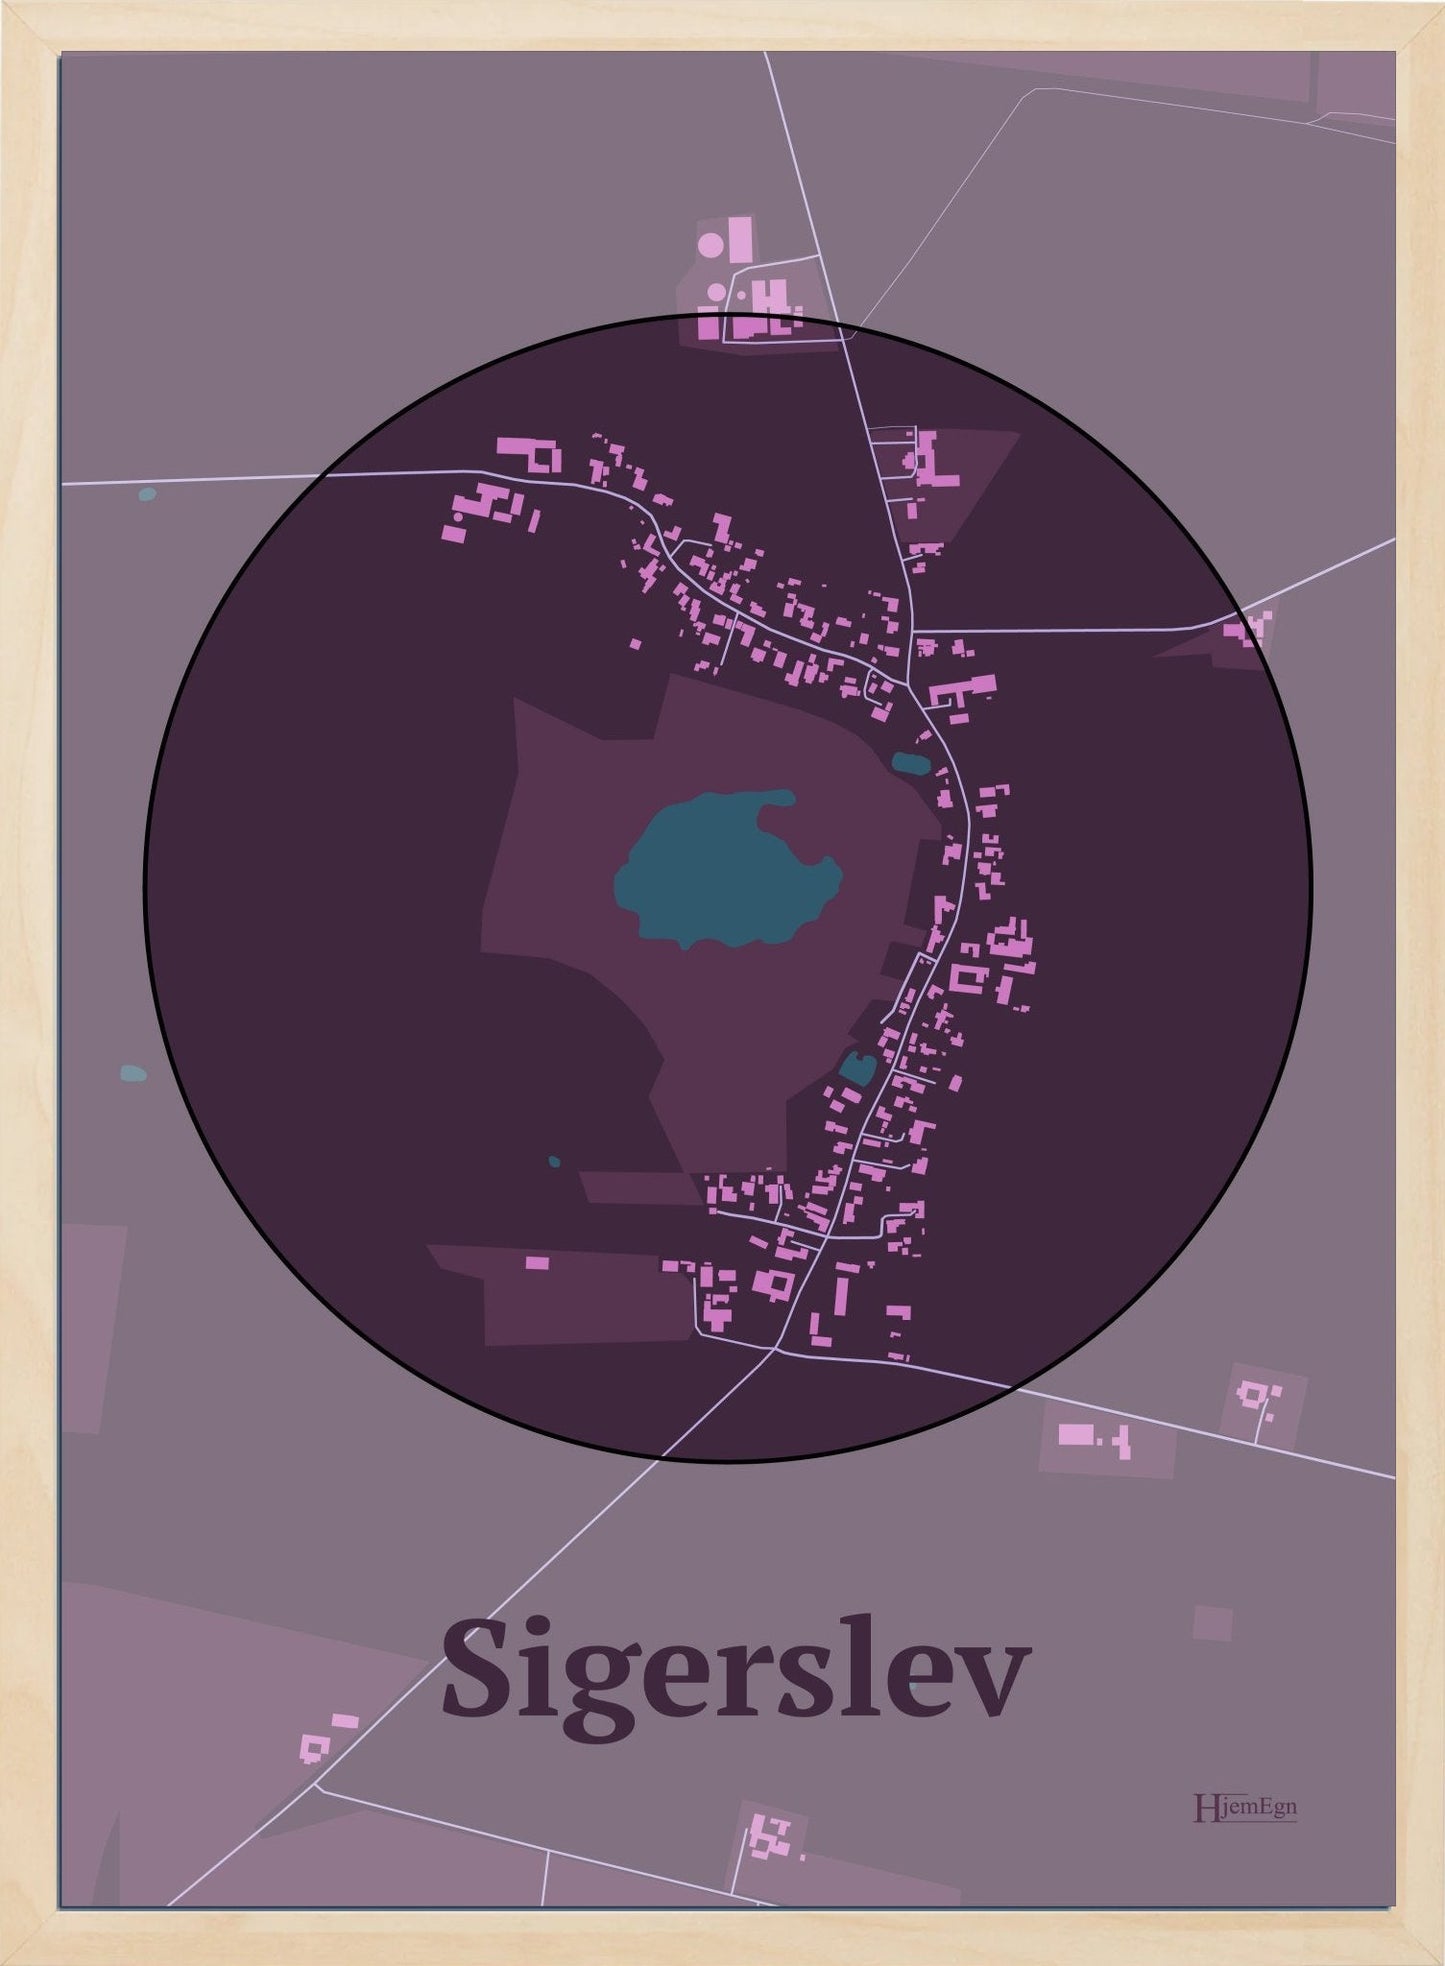 Sigerslev plakat i farve mørk rød og HjemEgn.dk design centrum. Design bykort for Sigerslev